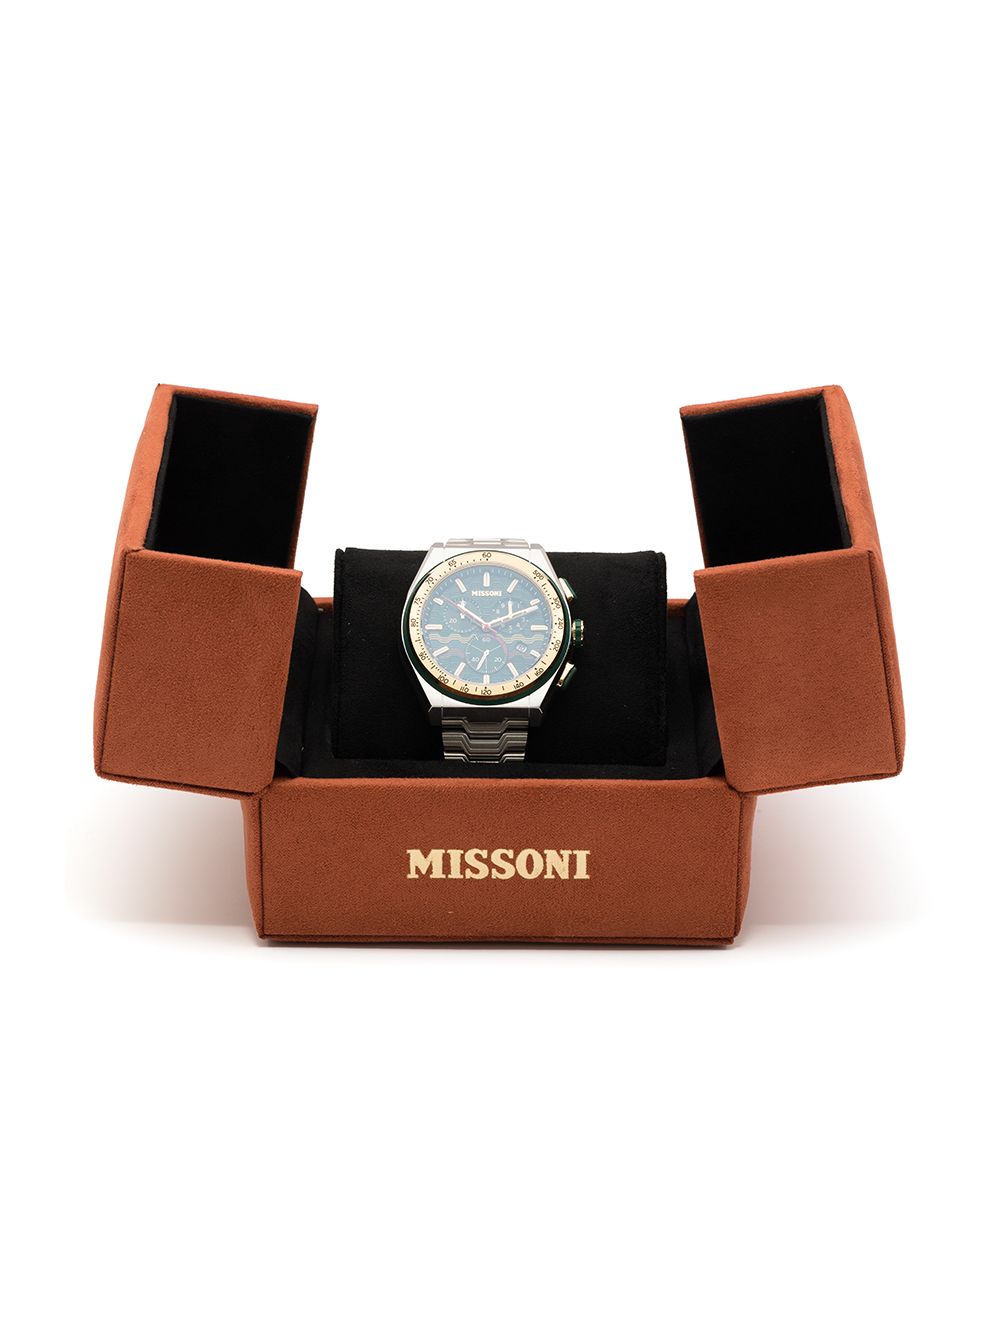 фото Missoni наручные часы m331 chronograph 44.5 мм